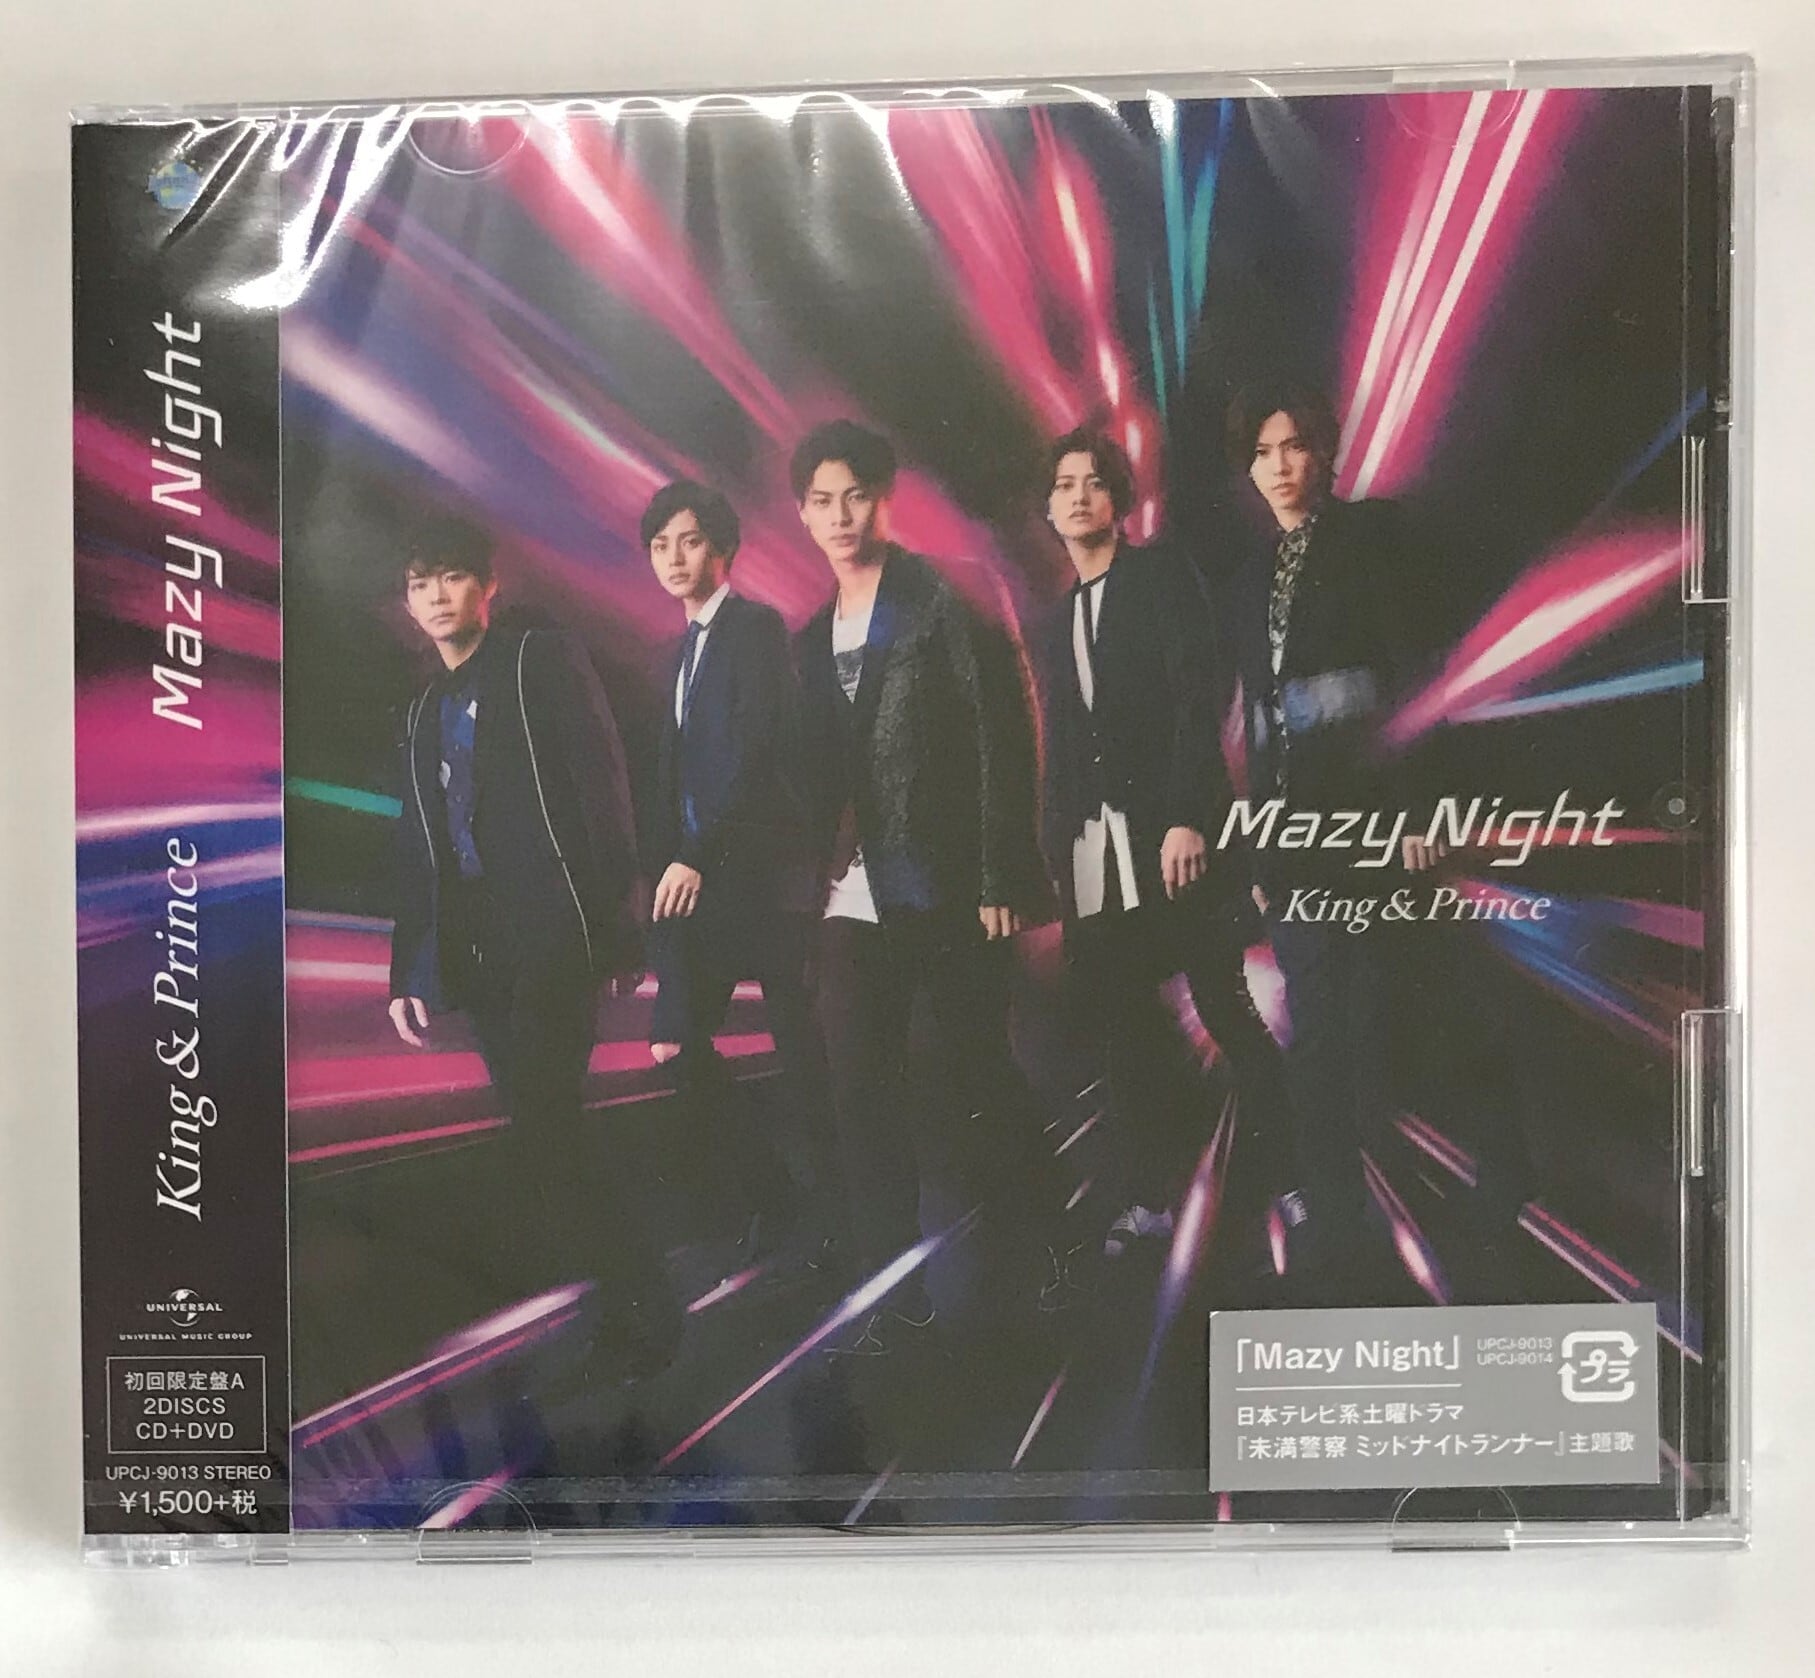 Mazy Night 初回限定盤A - 邦楽